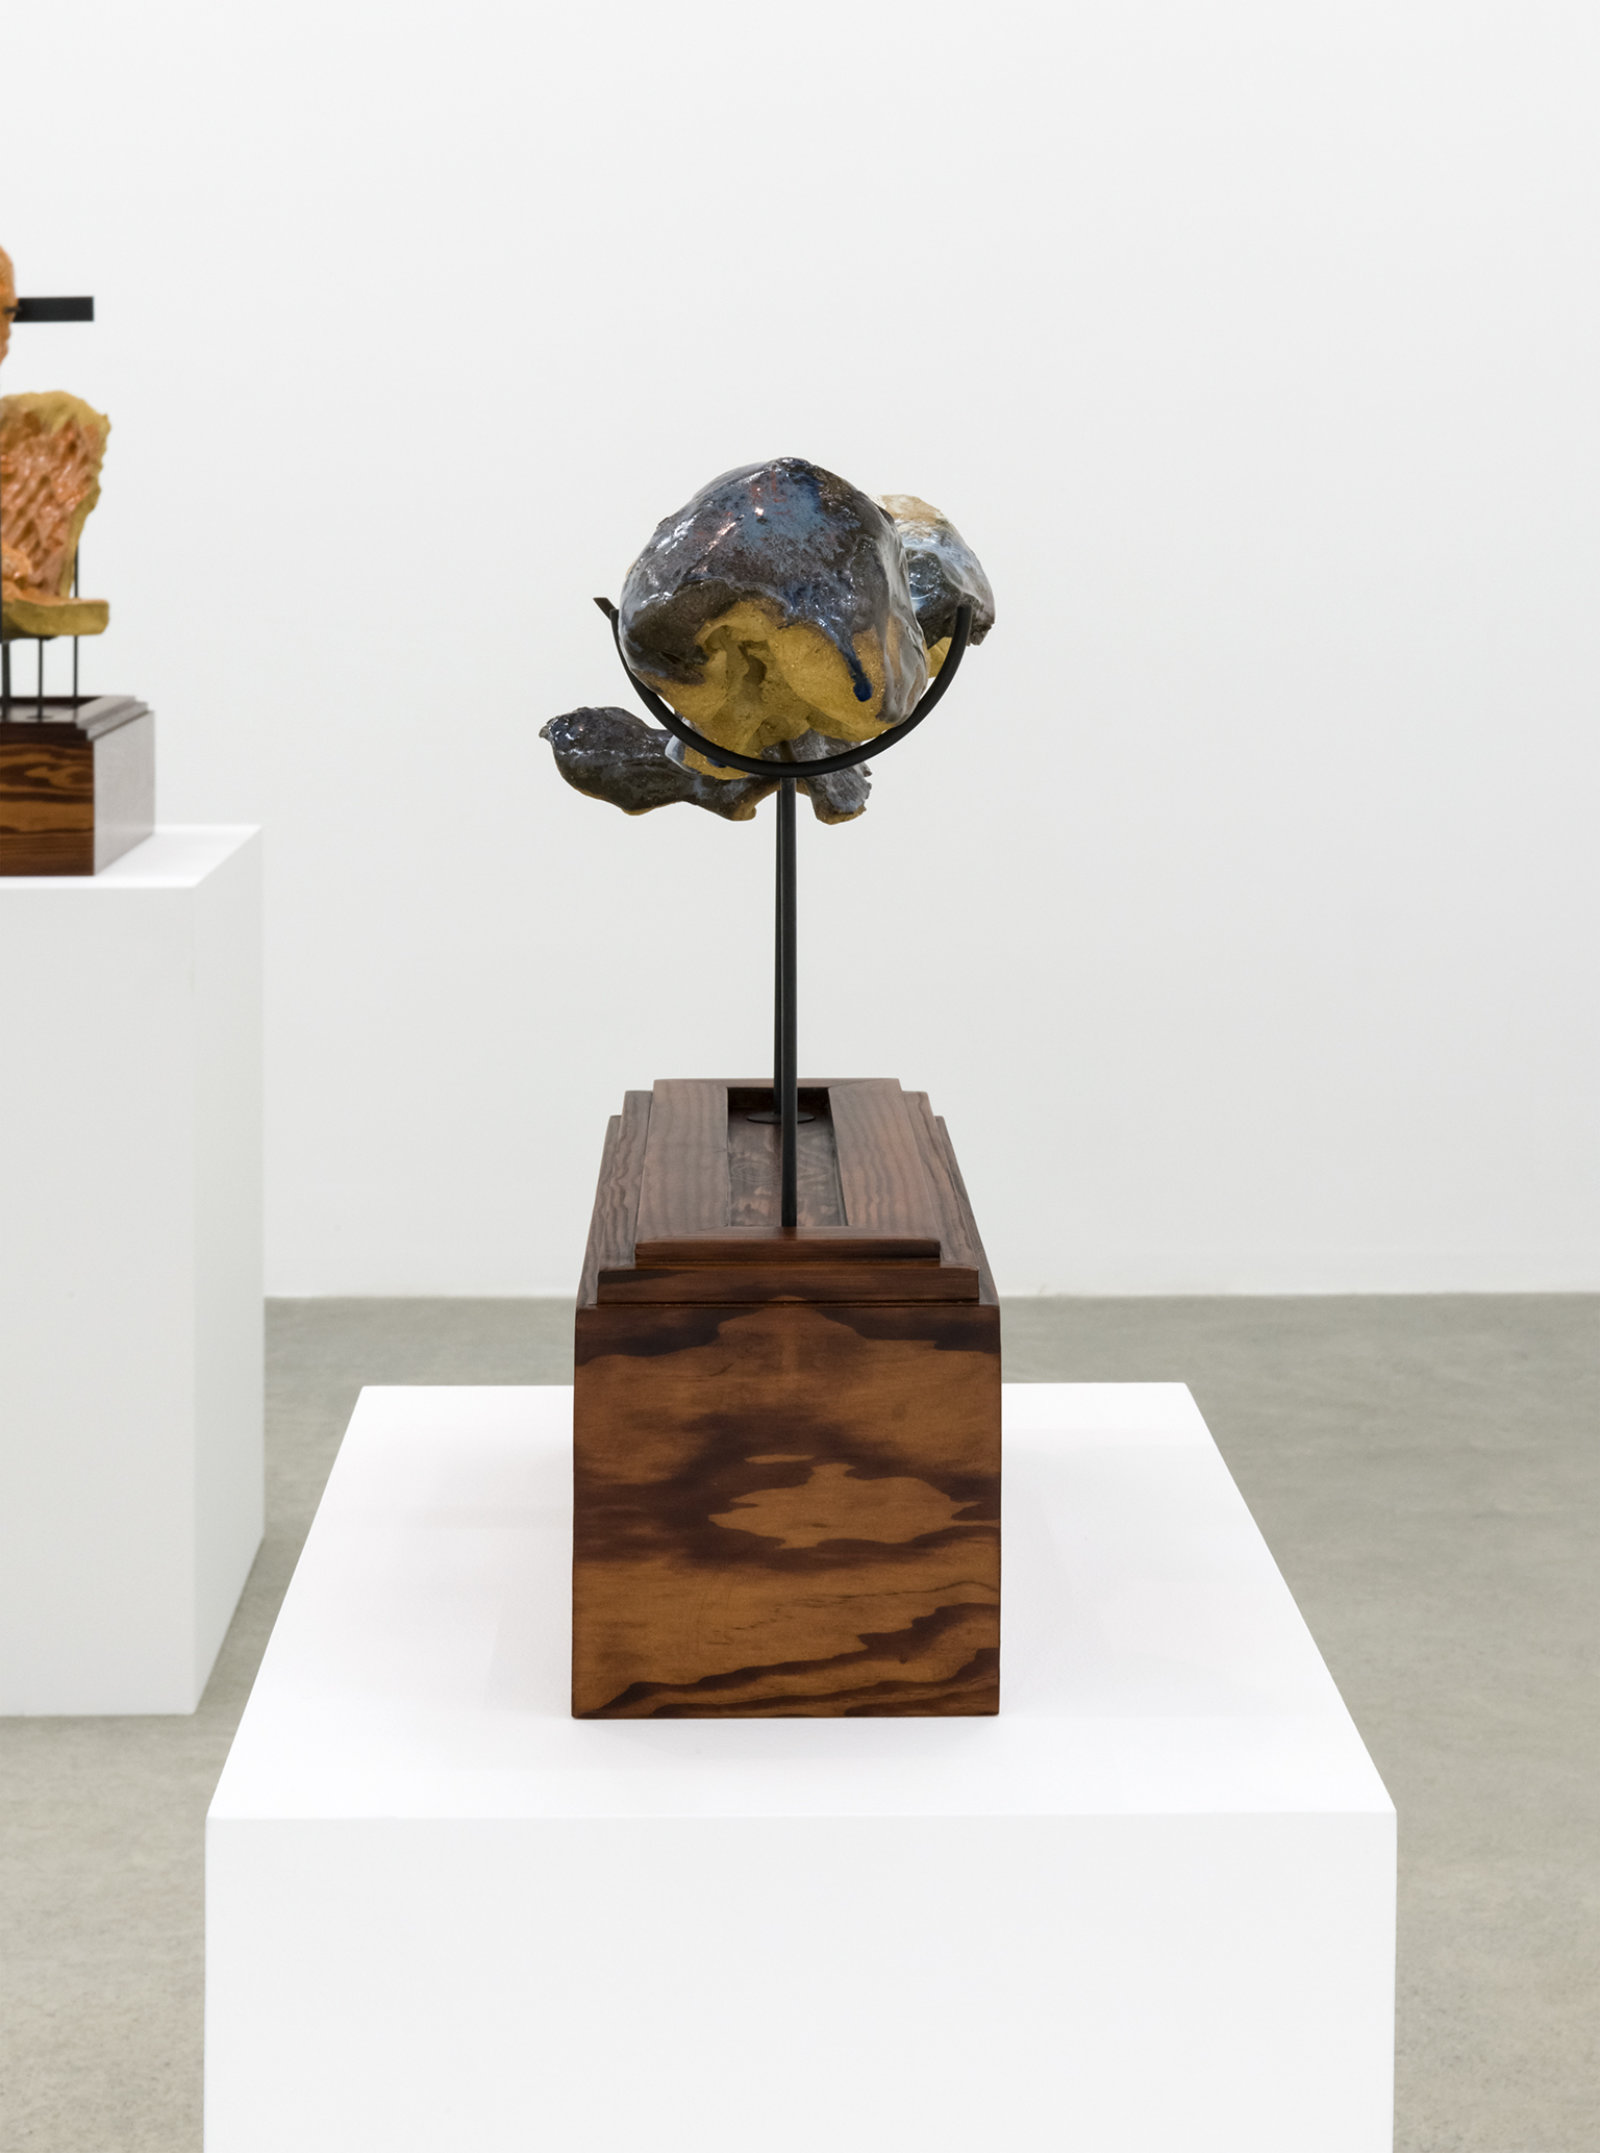 Damian Moppett, Figure in Two, 2016, glazed stoneware, wood, steel, 15 x 20 x 6 in. (39 x 51 x 16 cm)